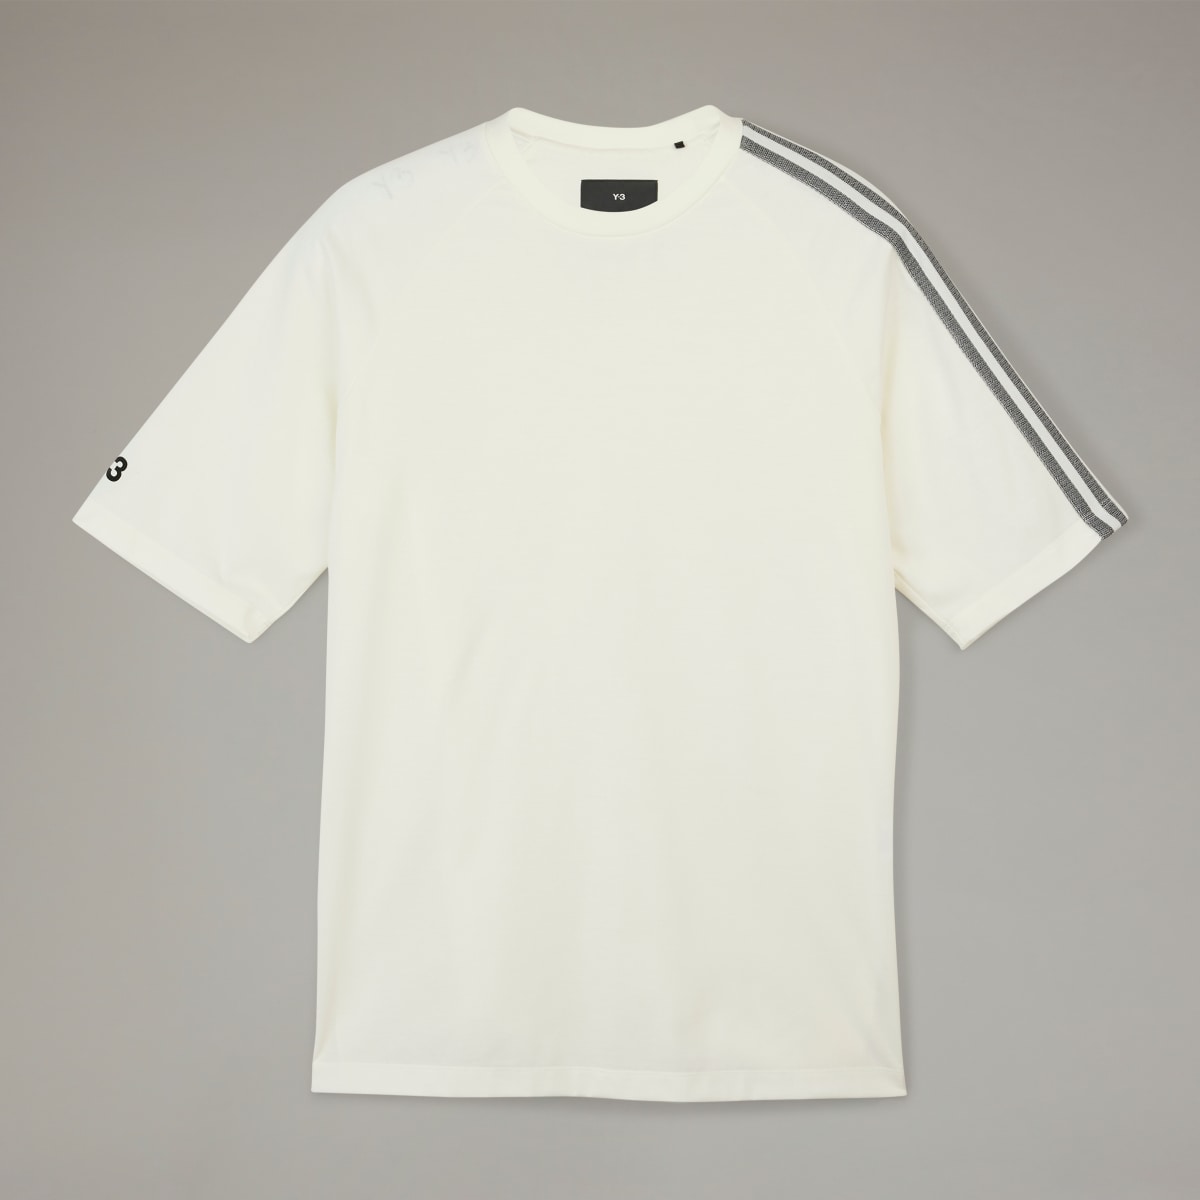 Adidas Y-3 3-Stripes Short Sleeve T-Shirt. 5